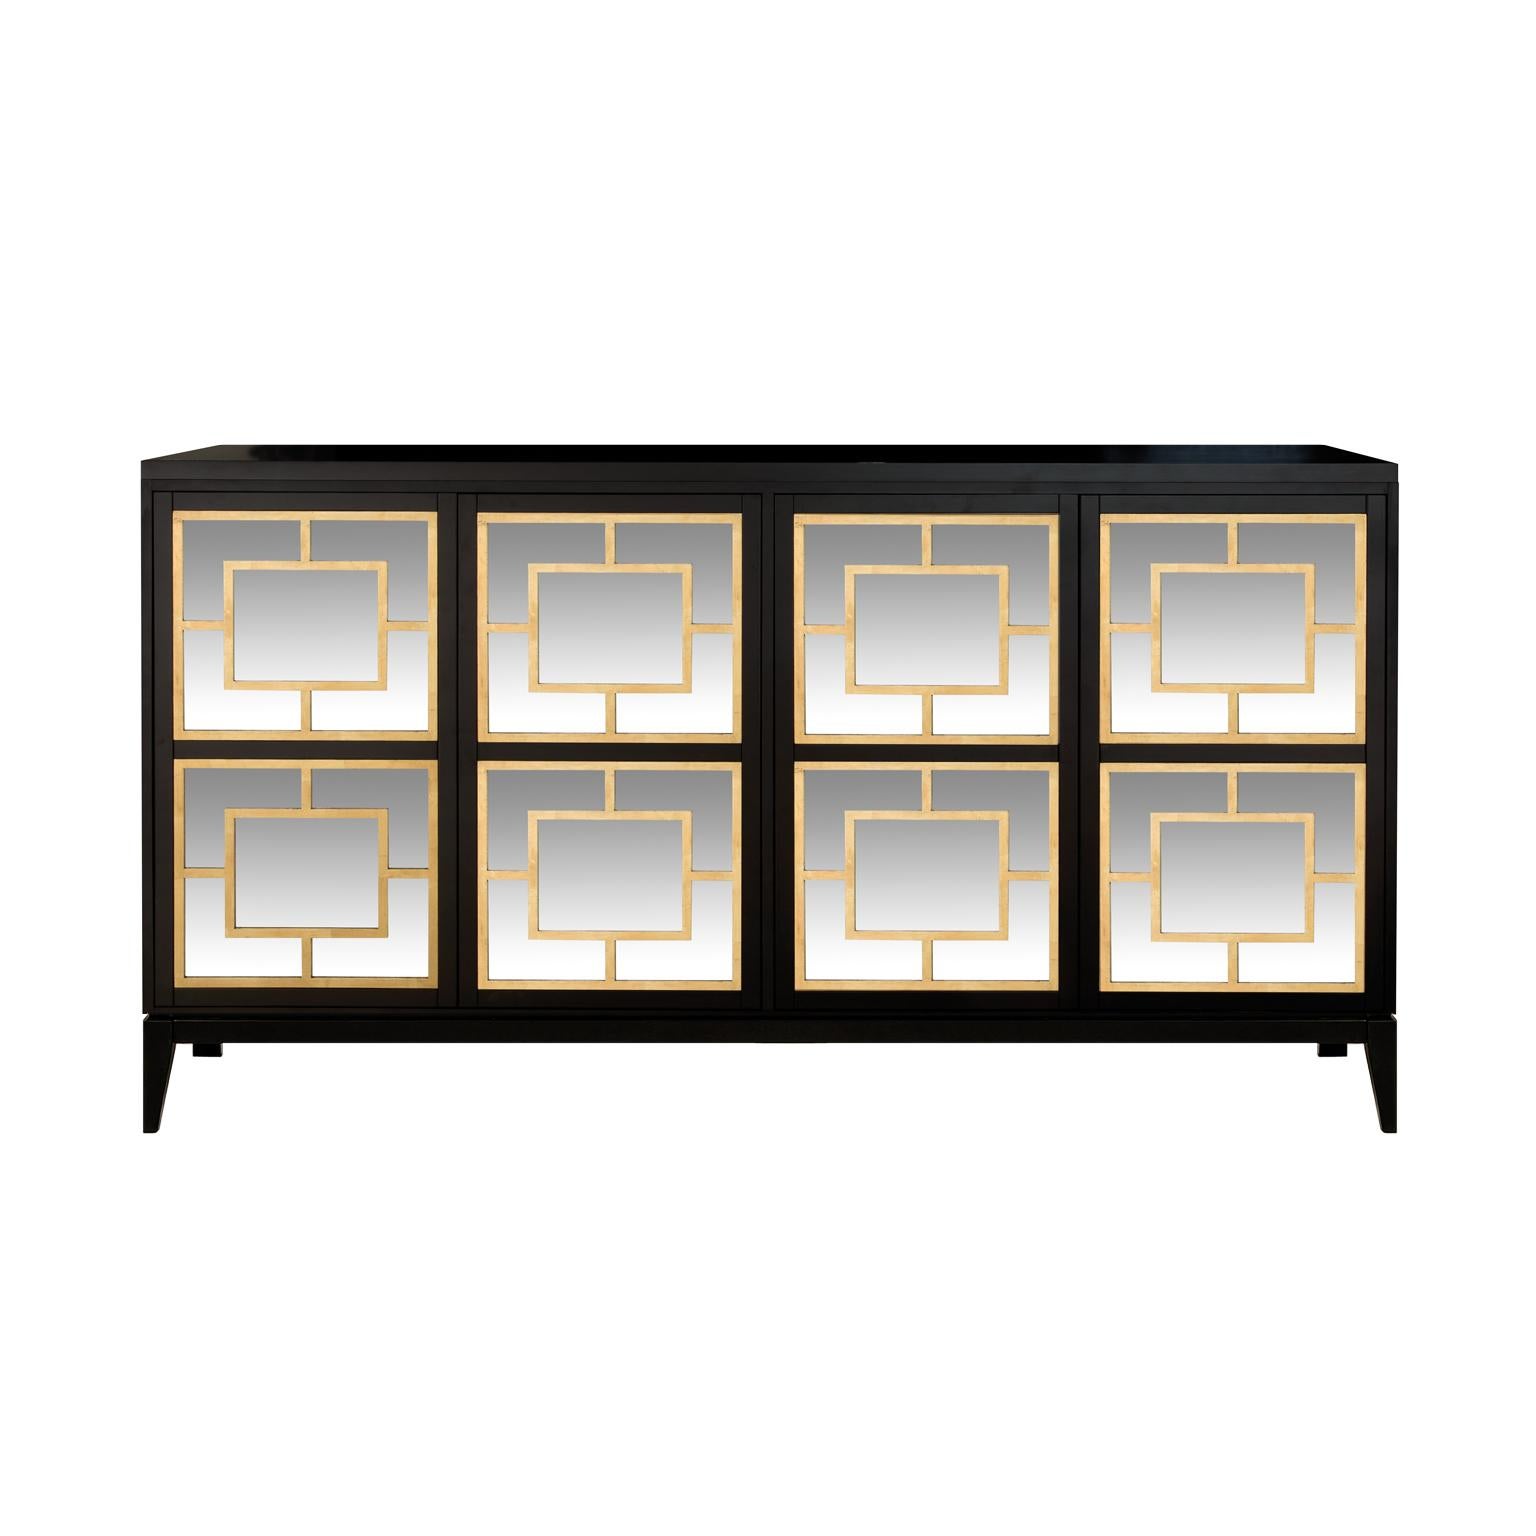 Designé par ICS et fabriqué avec expertise par des artisans italiens, le buffet Zoe comporte quatre portes en miroir ornées de motifs géométriques à la feuille d'or. Le corps repose sur des pieds fuselés qui lui confèrent une allure